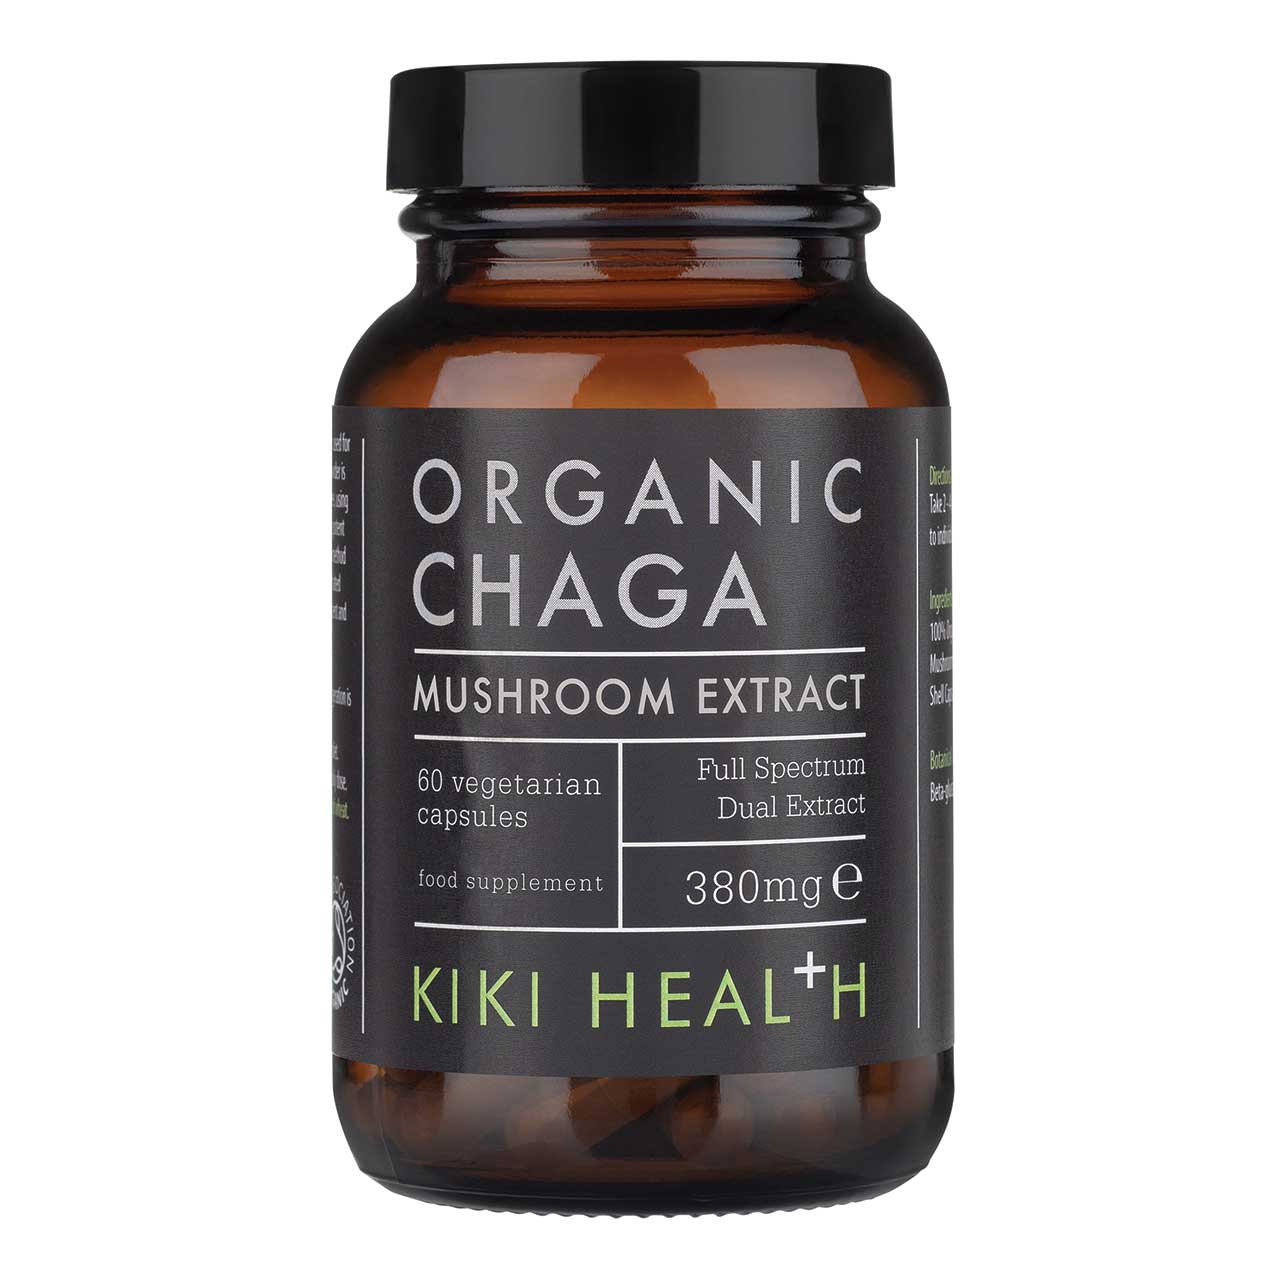 有機白樺茸膠囊 Kiki Health Organic Chaga Extract Mushroom (60 capsules)